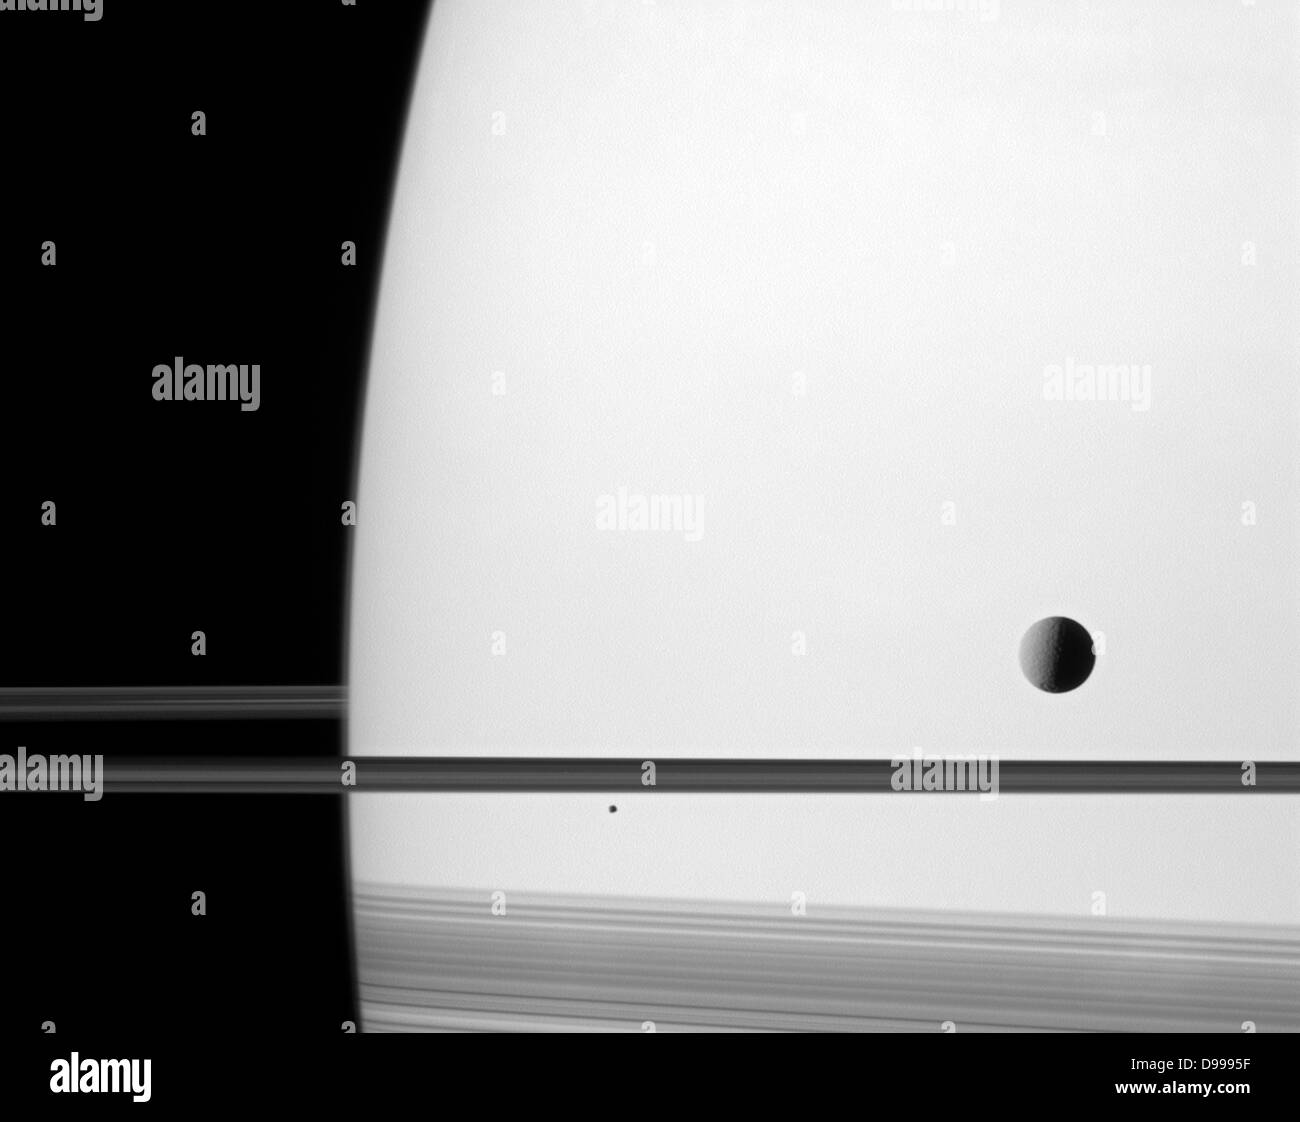 Schatten durch die Ringe des Saturn cast Abdunkeln der südlichen Hemisphäre des Planeten und eine verkürzte Darstellung am unteren Rand dieser Raumsonde Cassini Image zu geben. Stockfoto